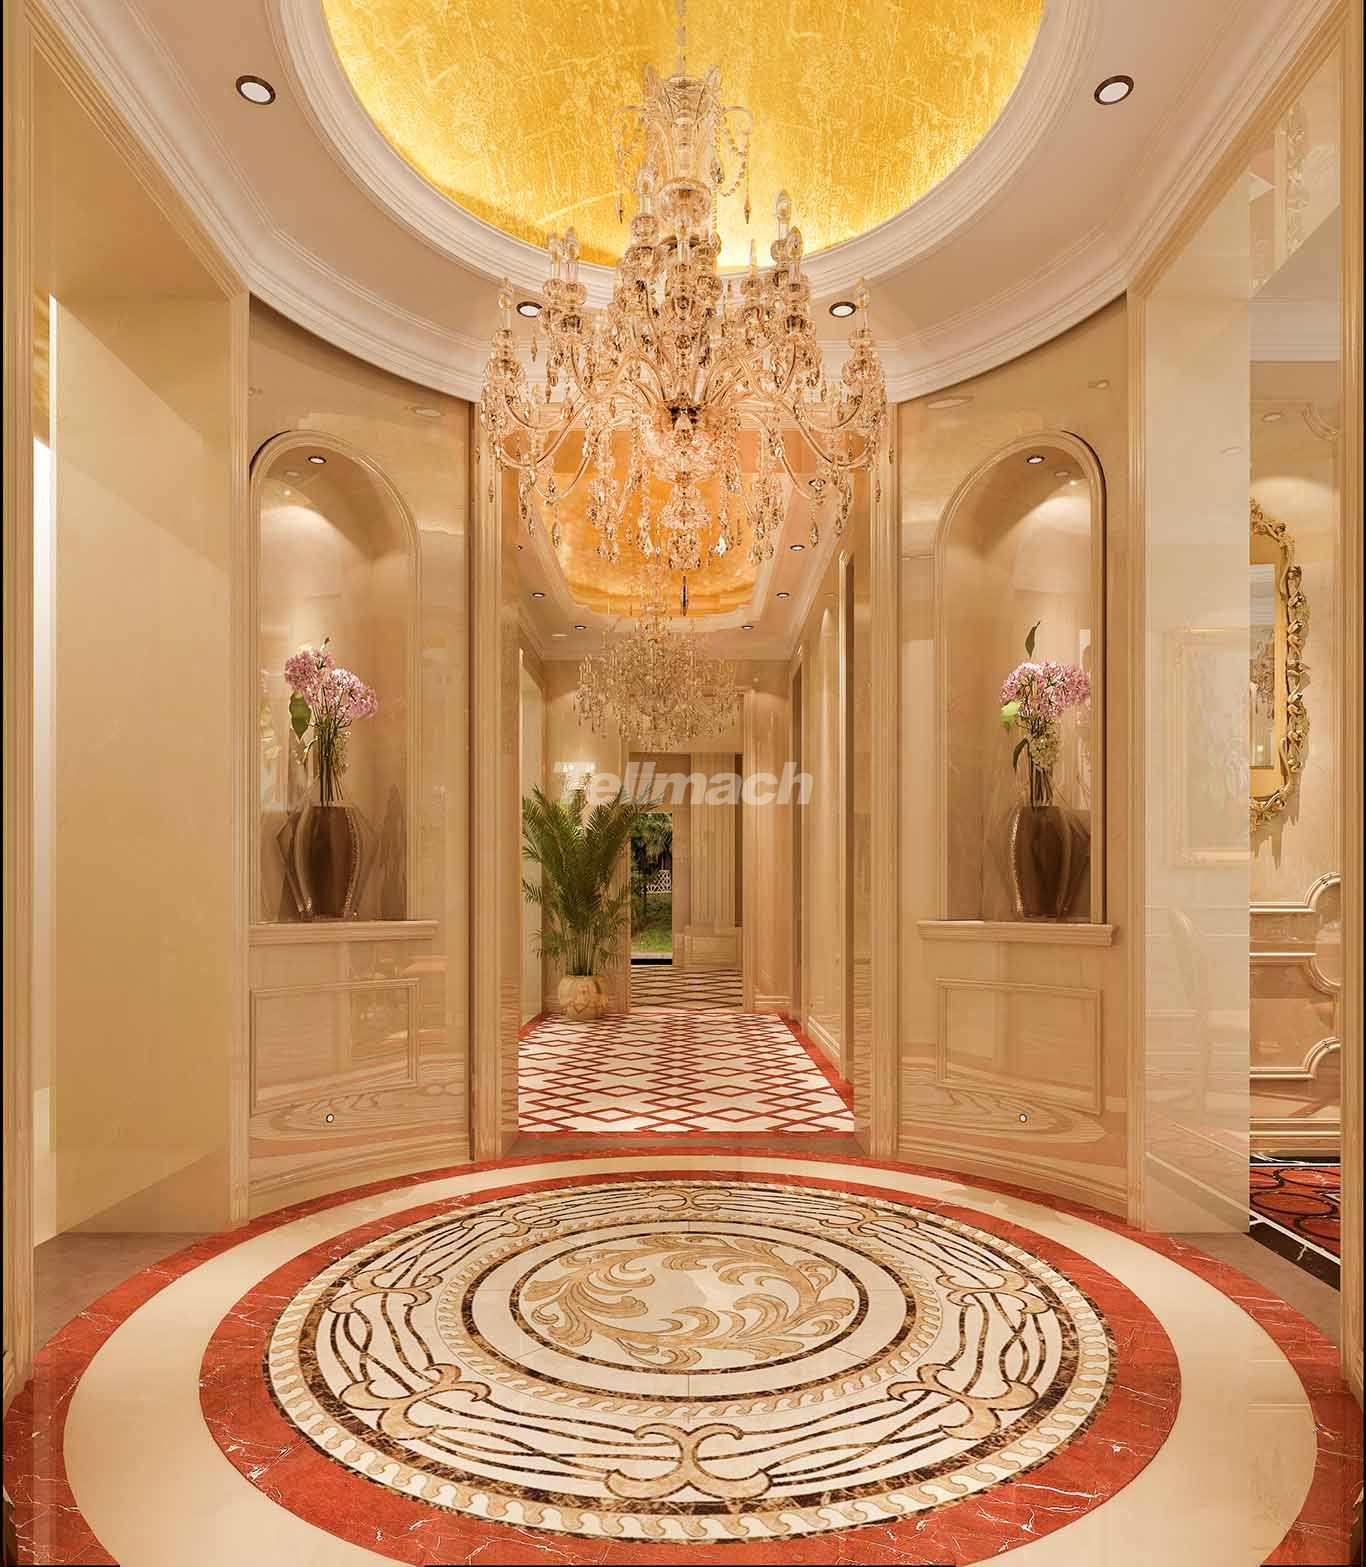 法式特色别墅大厅水晶吊灯装饰装修效果图片